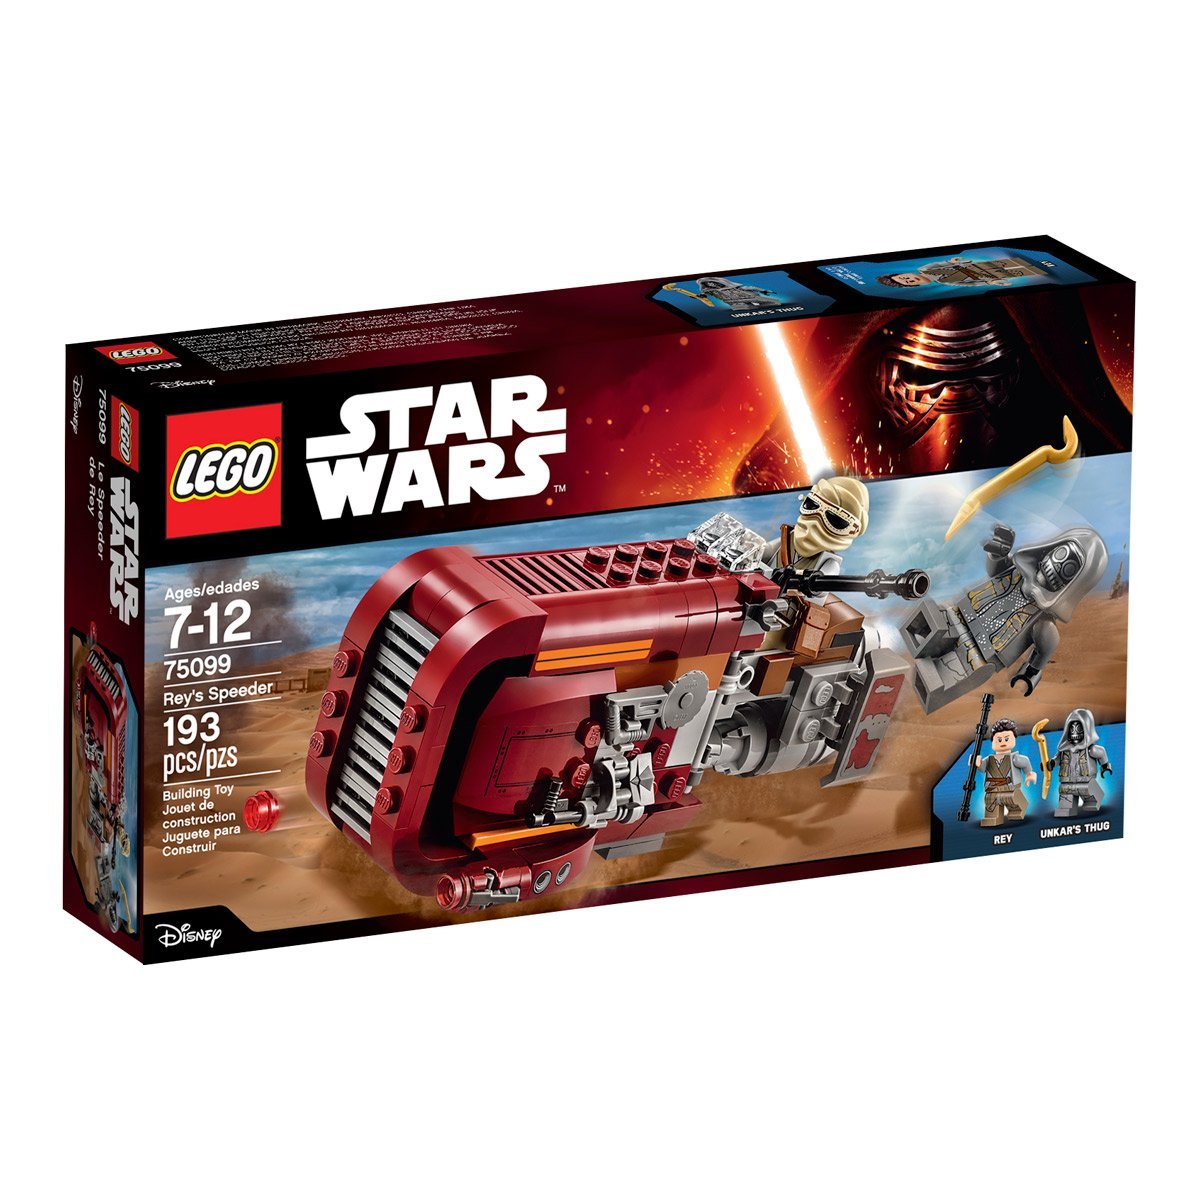 Star Wars Speeder Lego